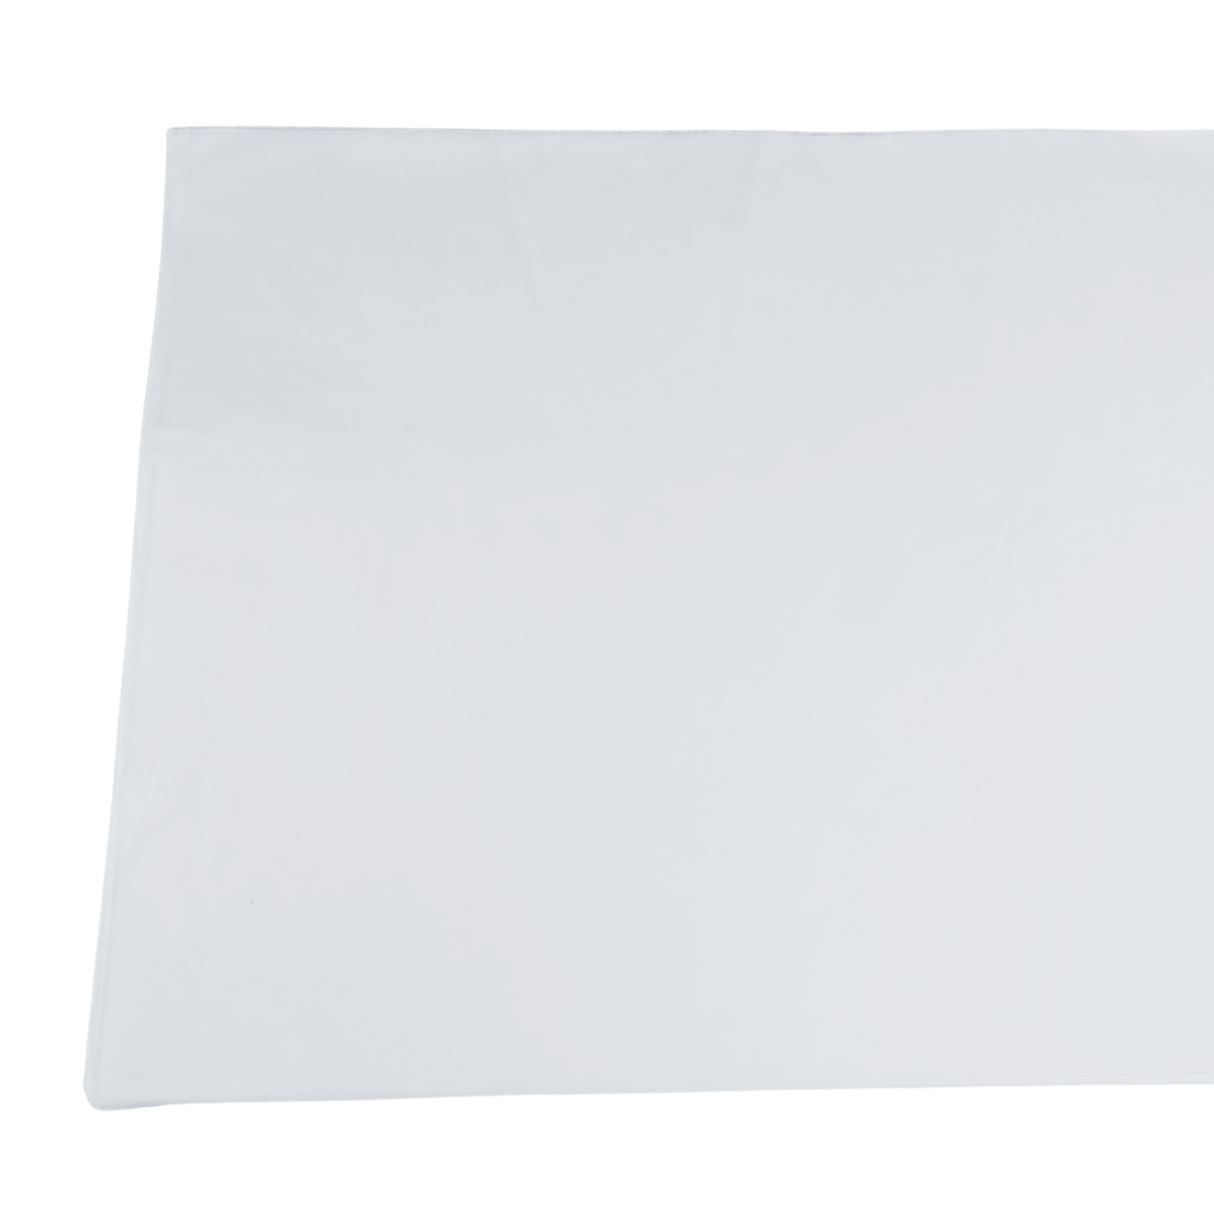 White Tissue Paper Flat 1